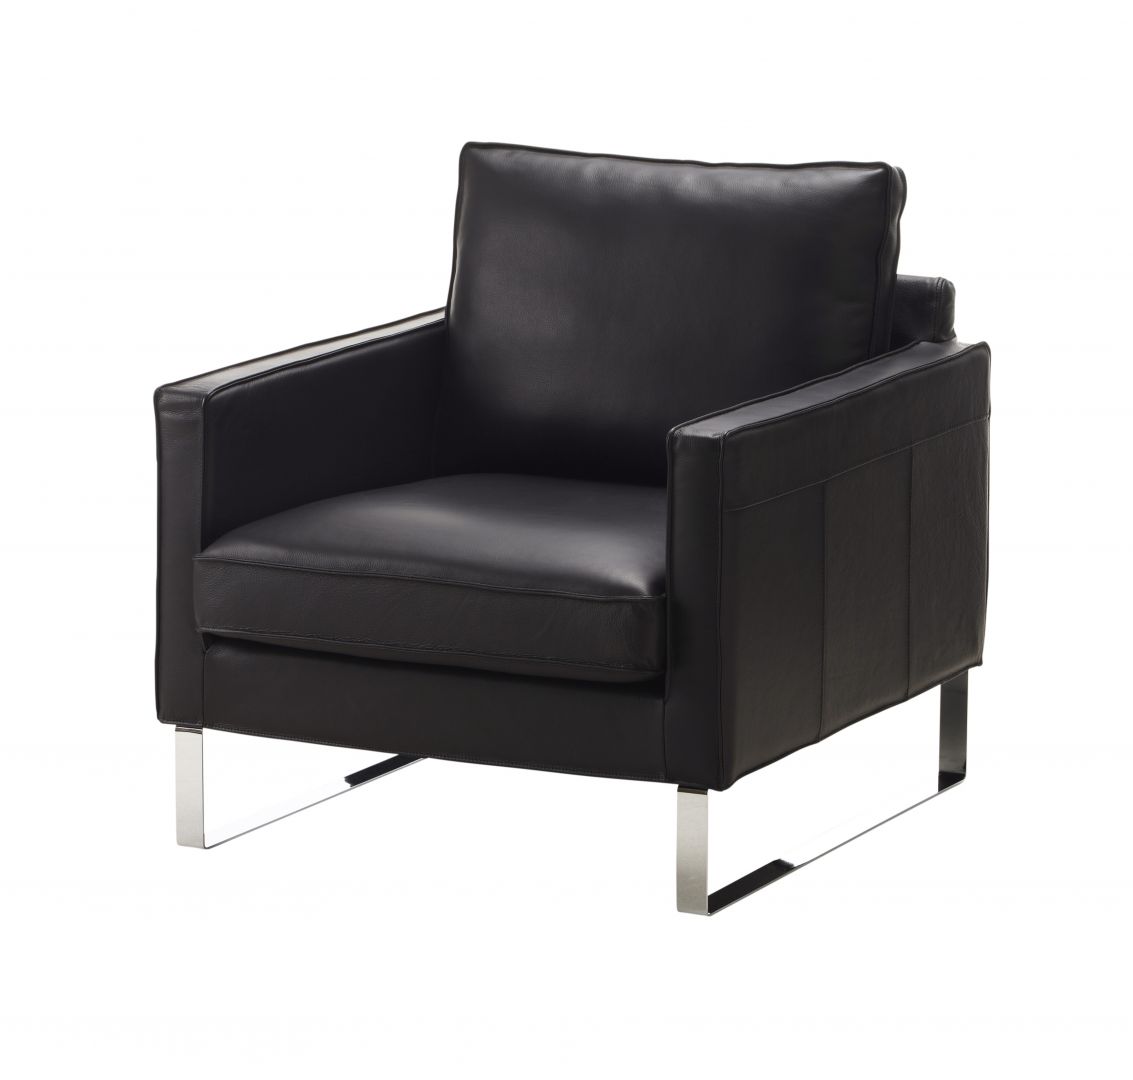 Fotel Mellby. Siedzisko oraz oparcie dopasowuje się do kształtów ciała. Fot. IKEA 